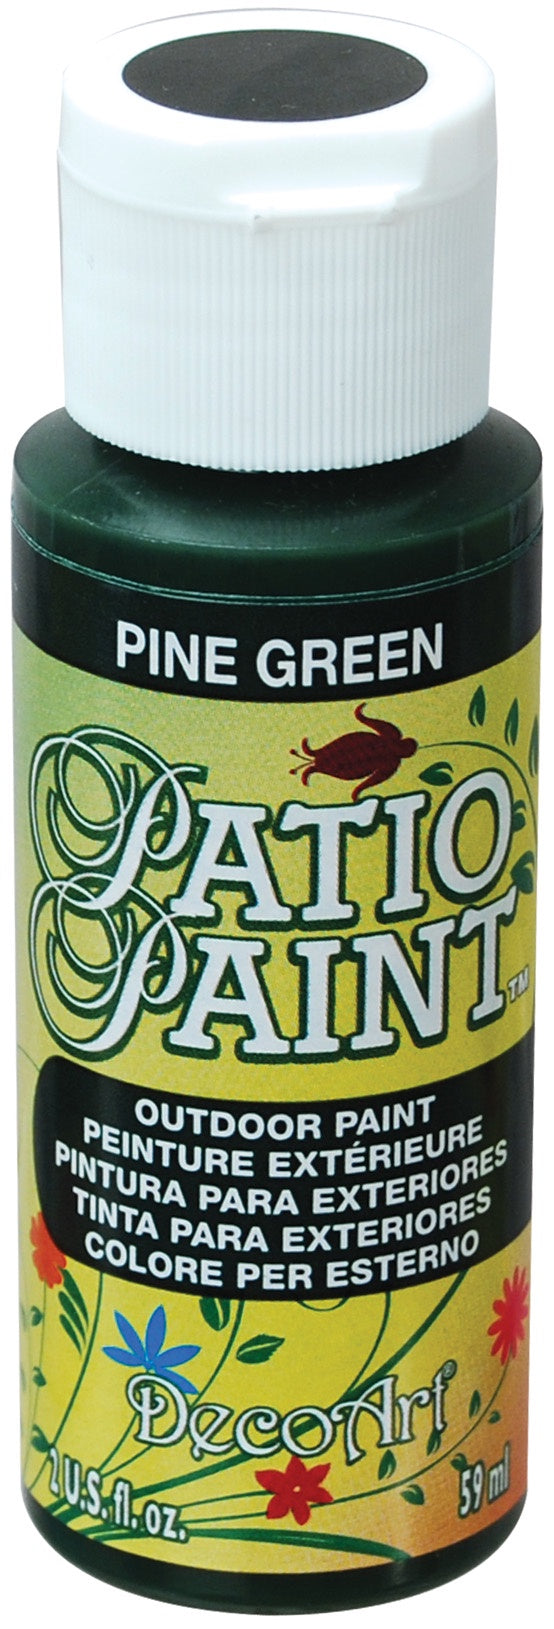 Deco Art Patio Paint 2oz - Pine Green